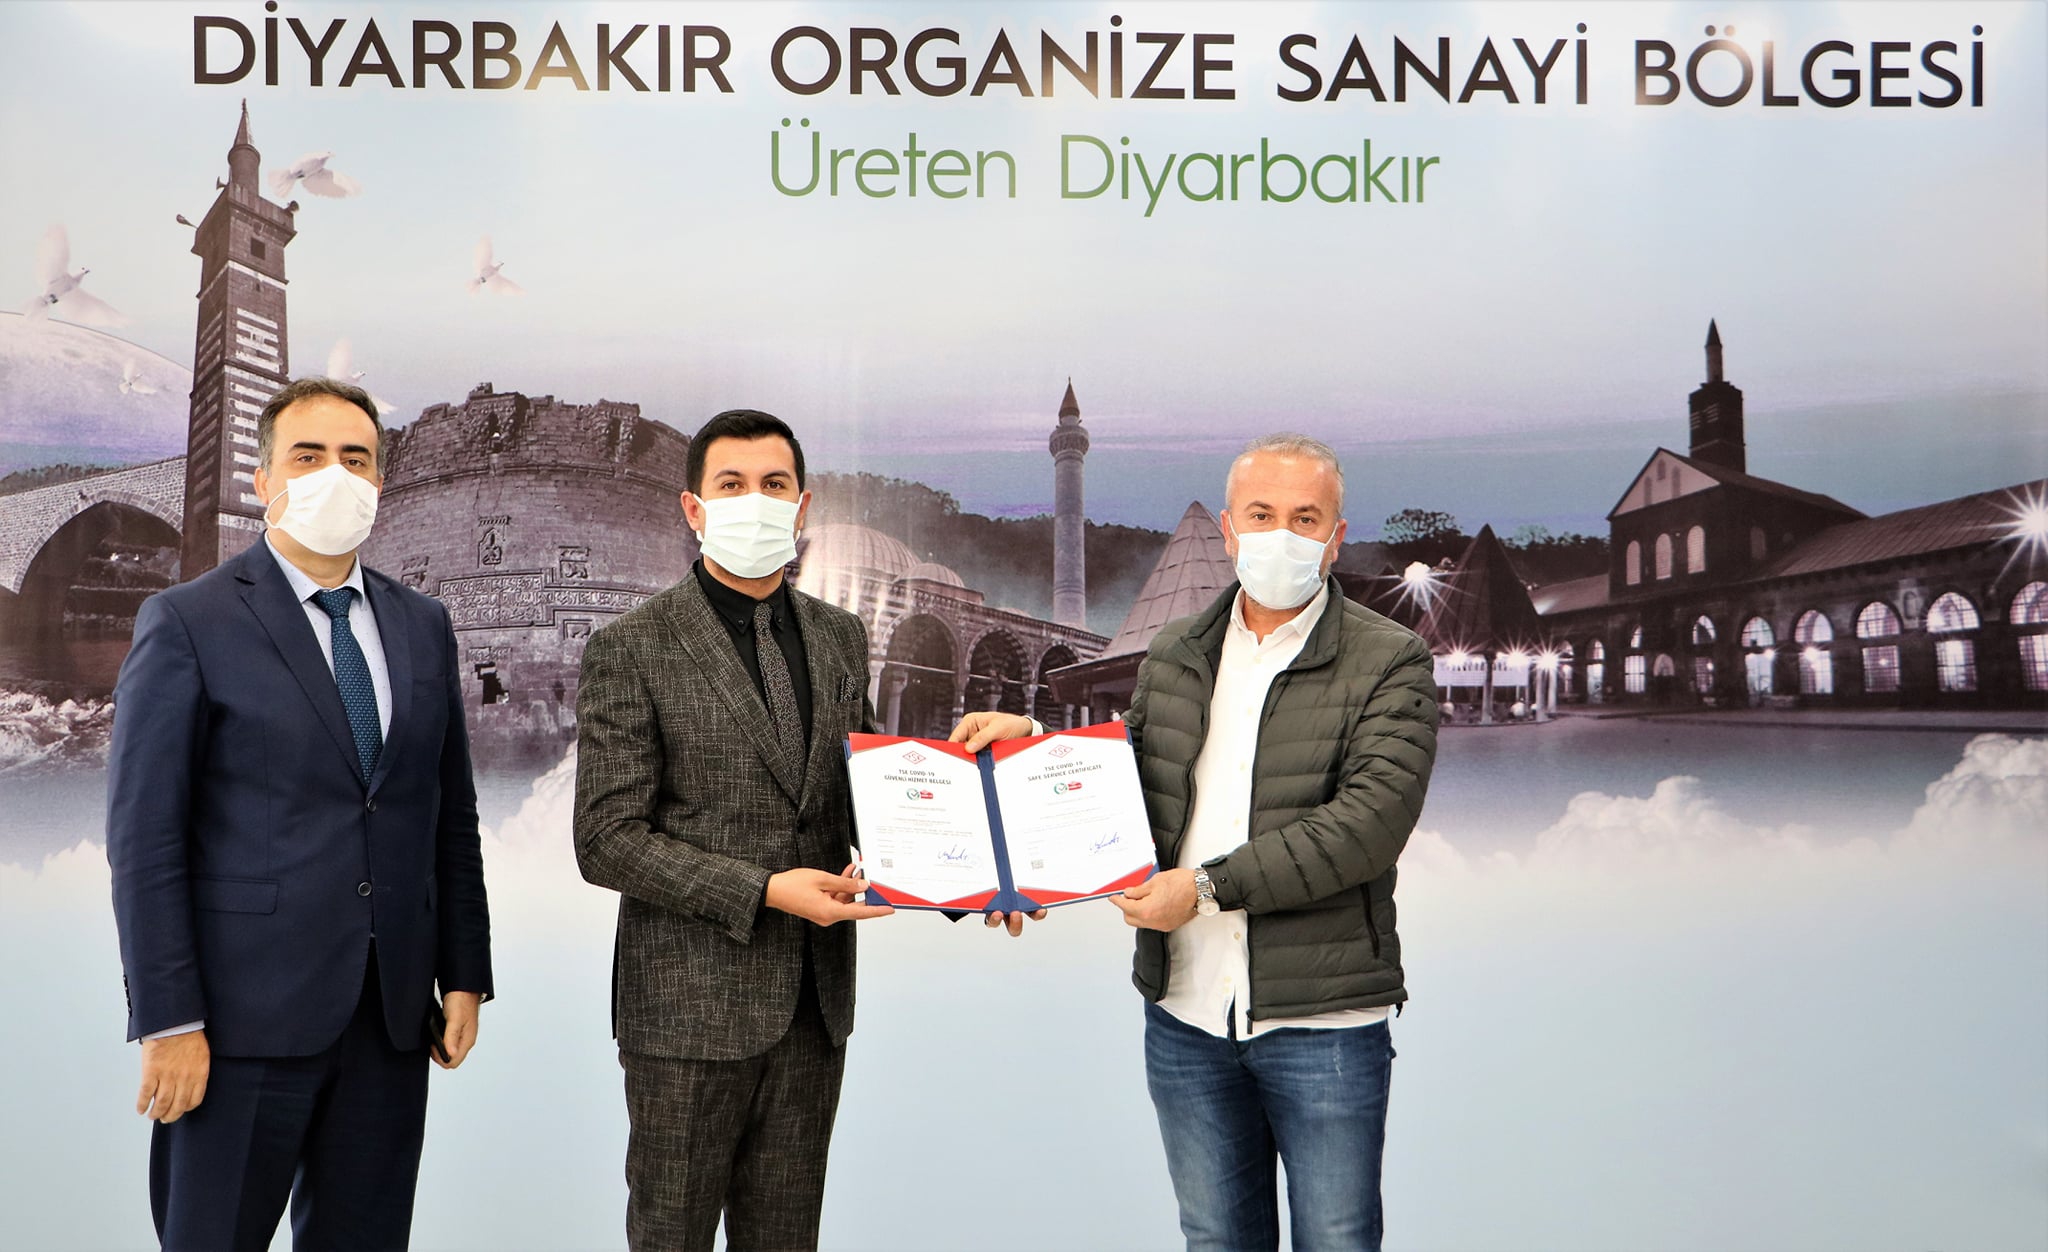 Diyarbakır OSB, Diyarbakır'da TSE Covid-19 güvenli hizmet belgesi alan ilk kuruluş oldu.